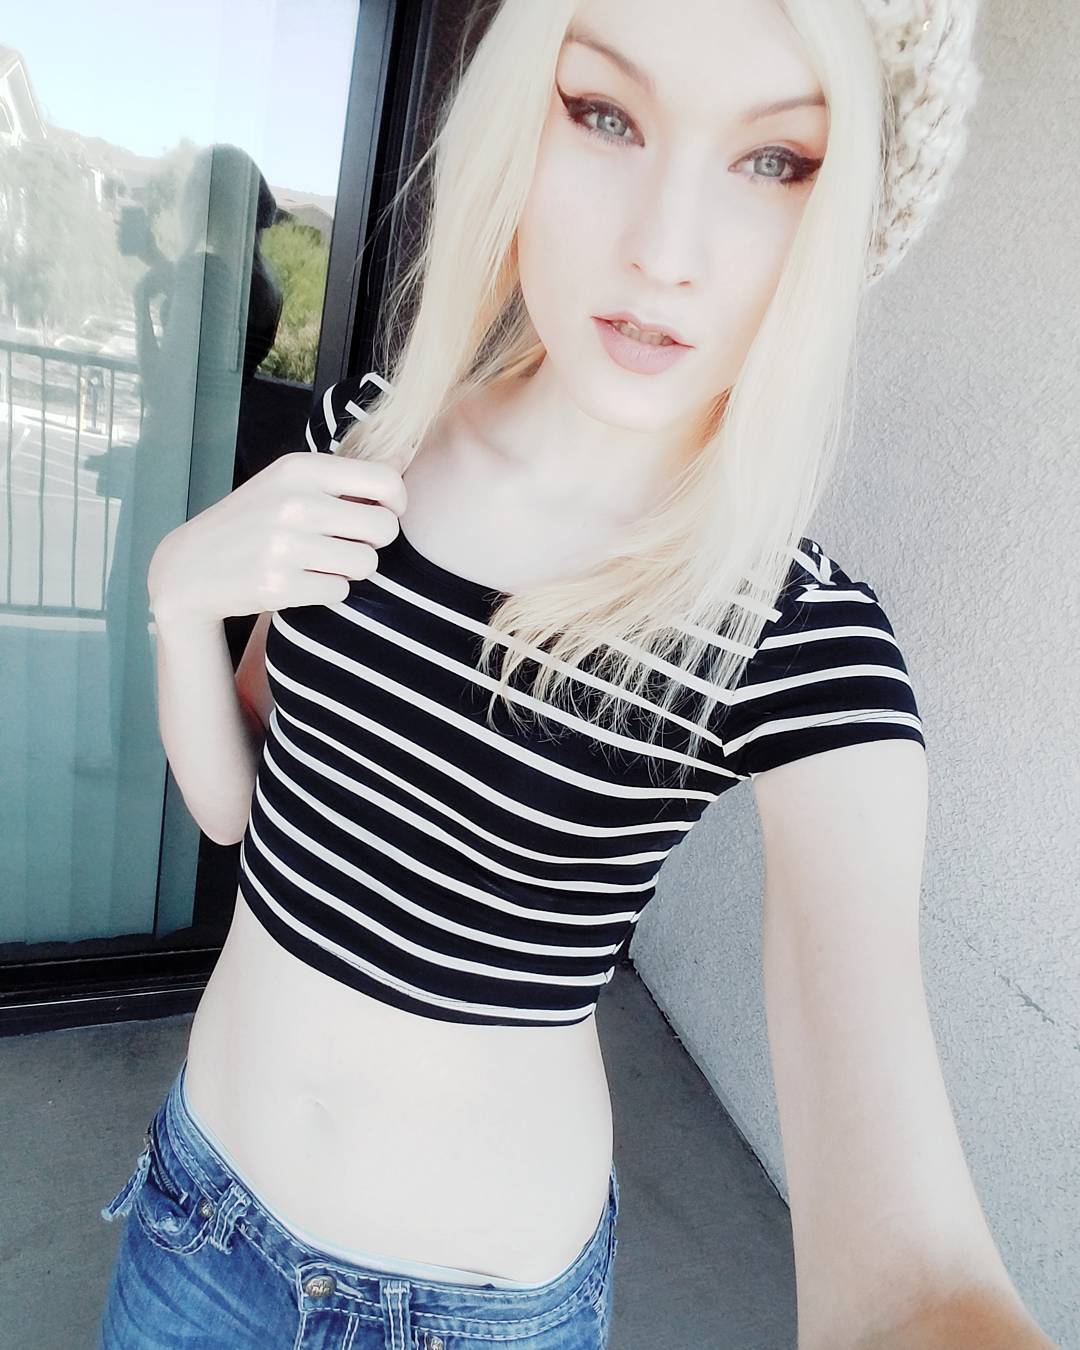 Skinny trap Jenny Flowers outdoor selfie